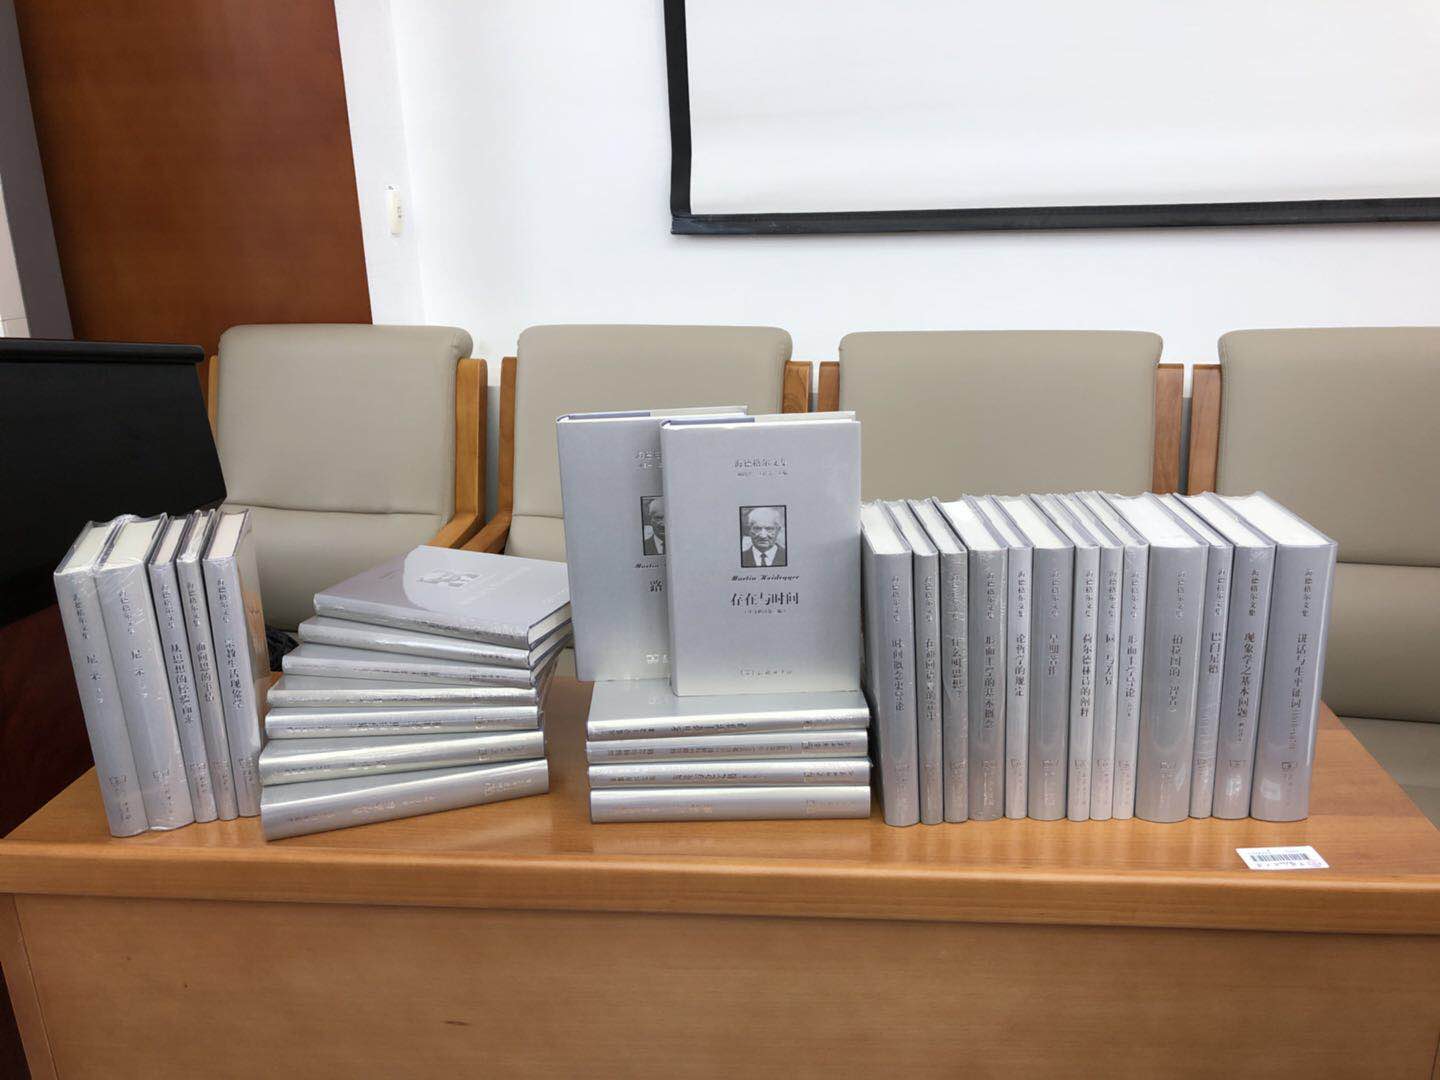 30卷本《海德格尔文集》在中国人民大学举行新书发布会